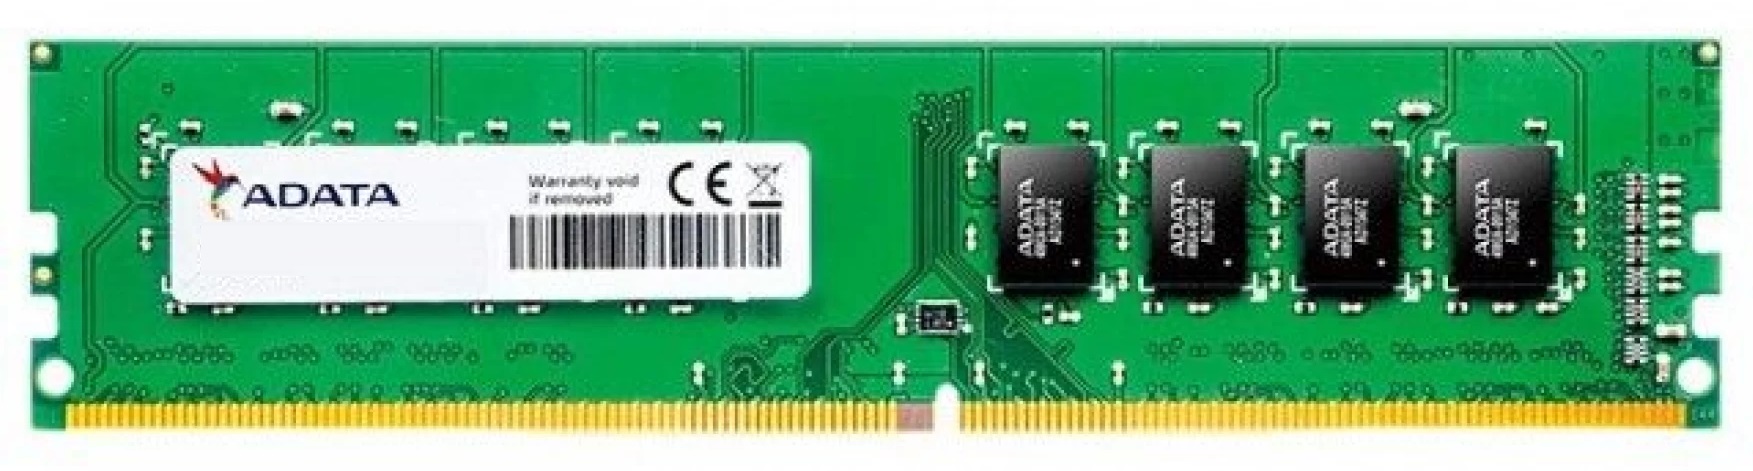 Memoria RAM 32GB para PC de Escritorio / Adata | 2312 - Modulo de Memoria RAM Adata de 32GB para PC de Escritorio. Garantía 3-Años